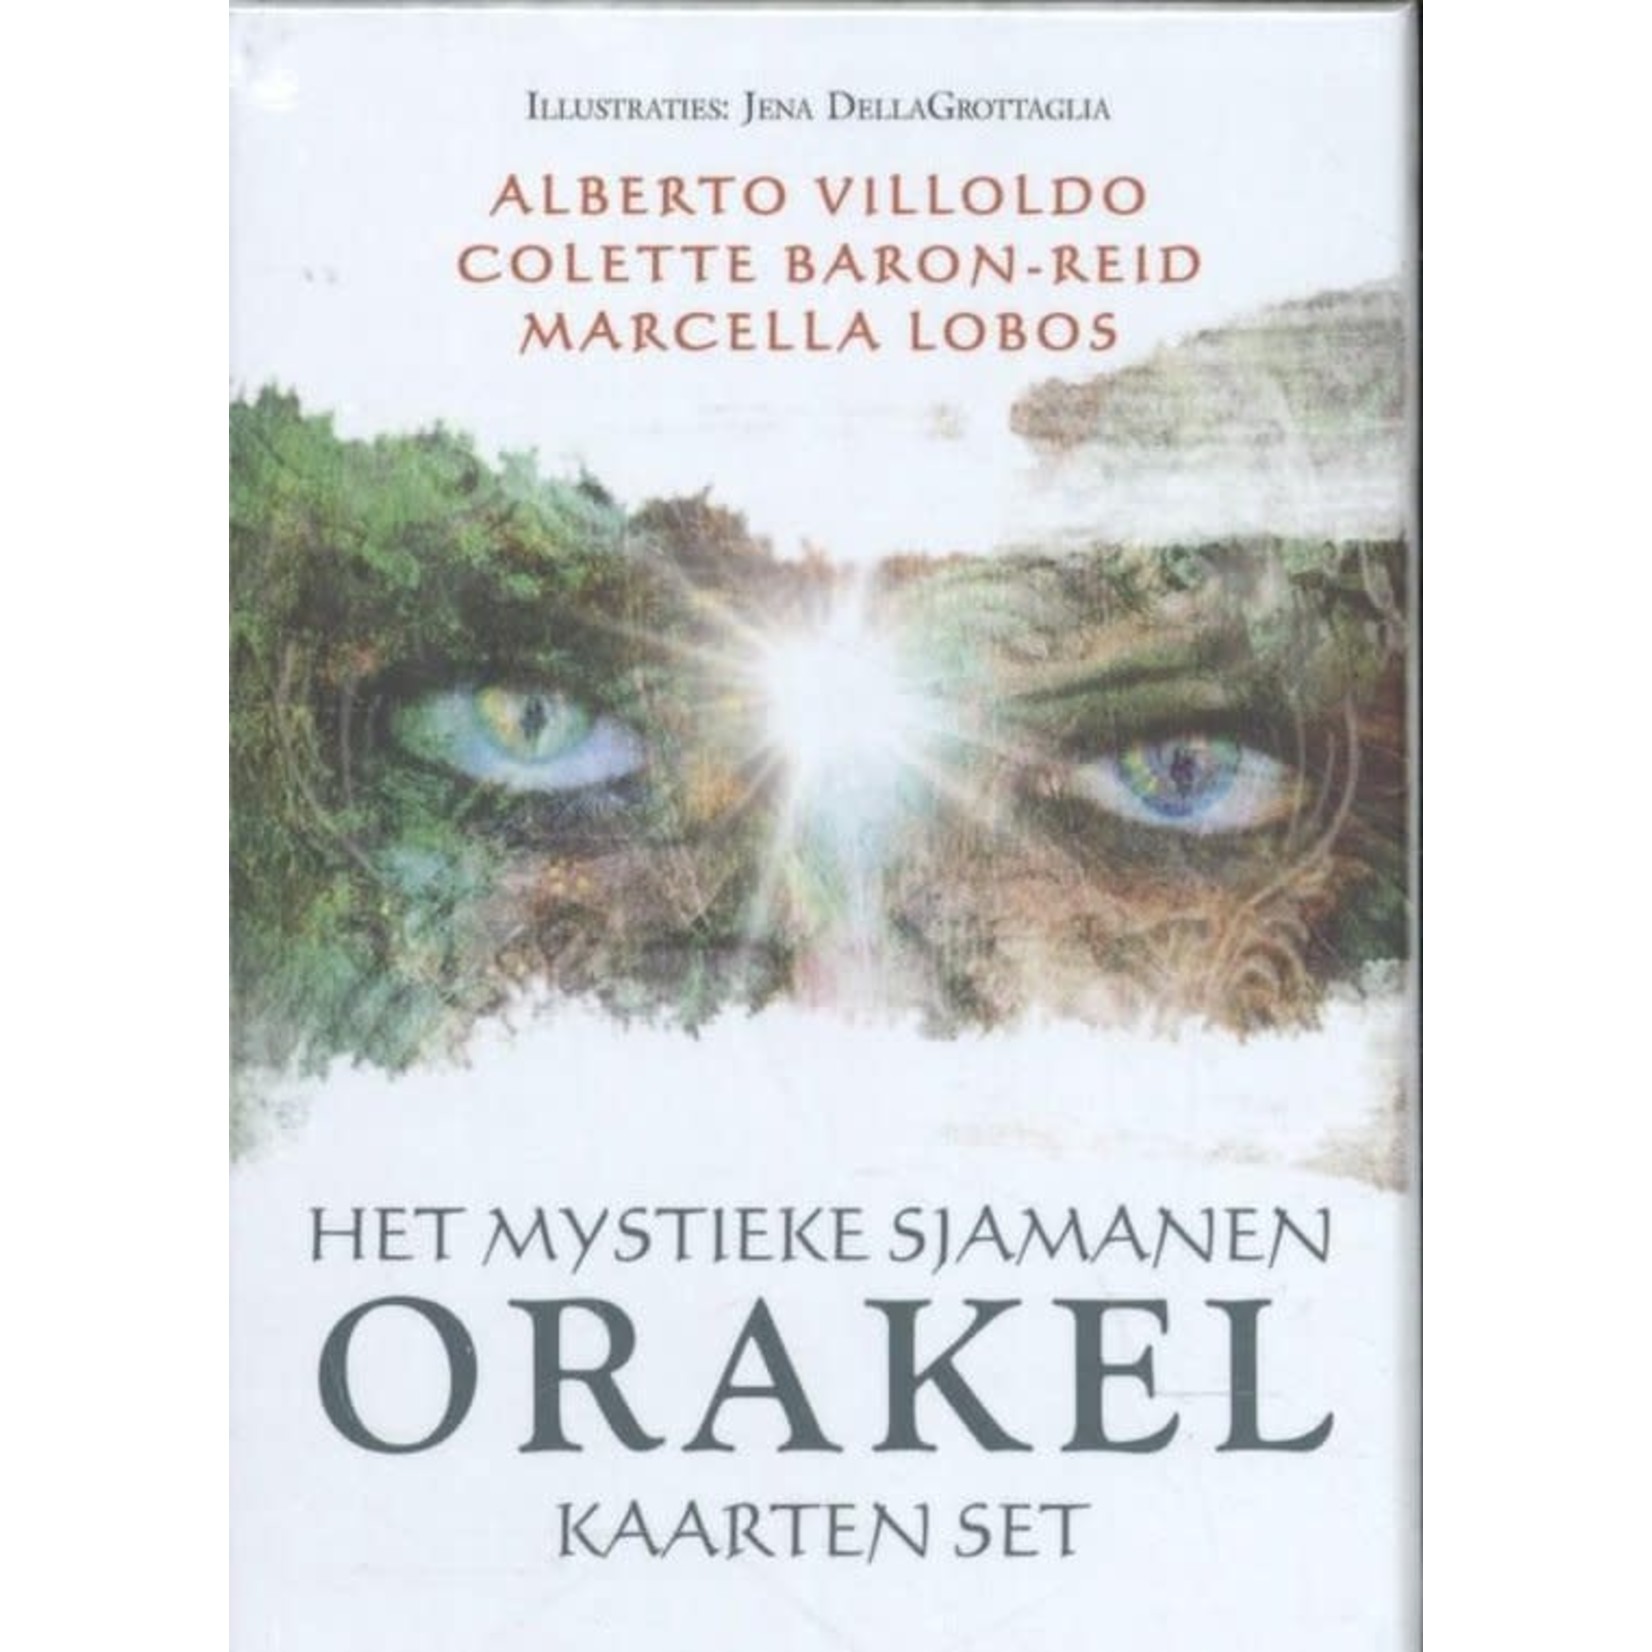 Het Mystieke Sjamanen Orakelkaarten Set |  Alberto Villoldo